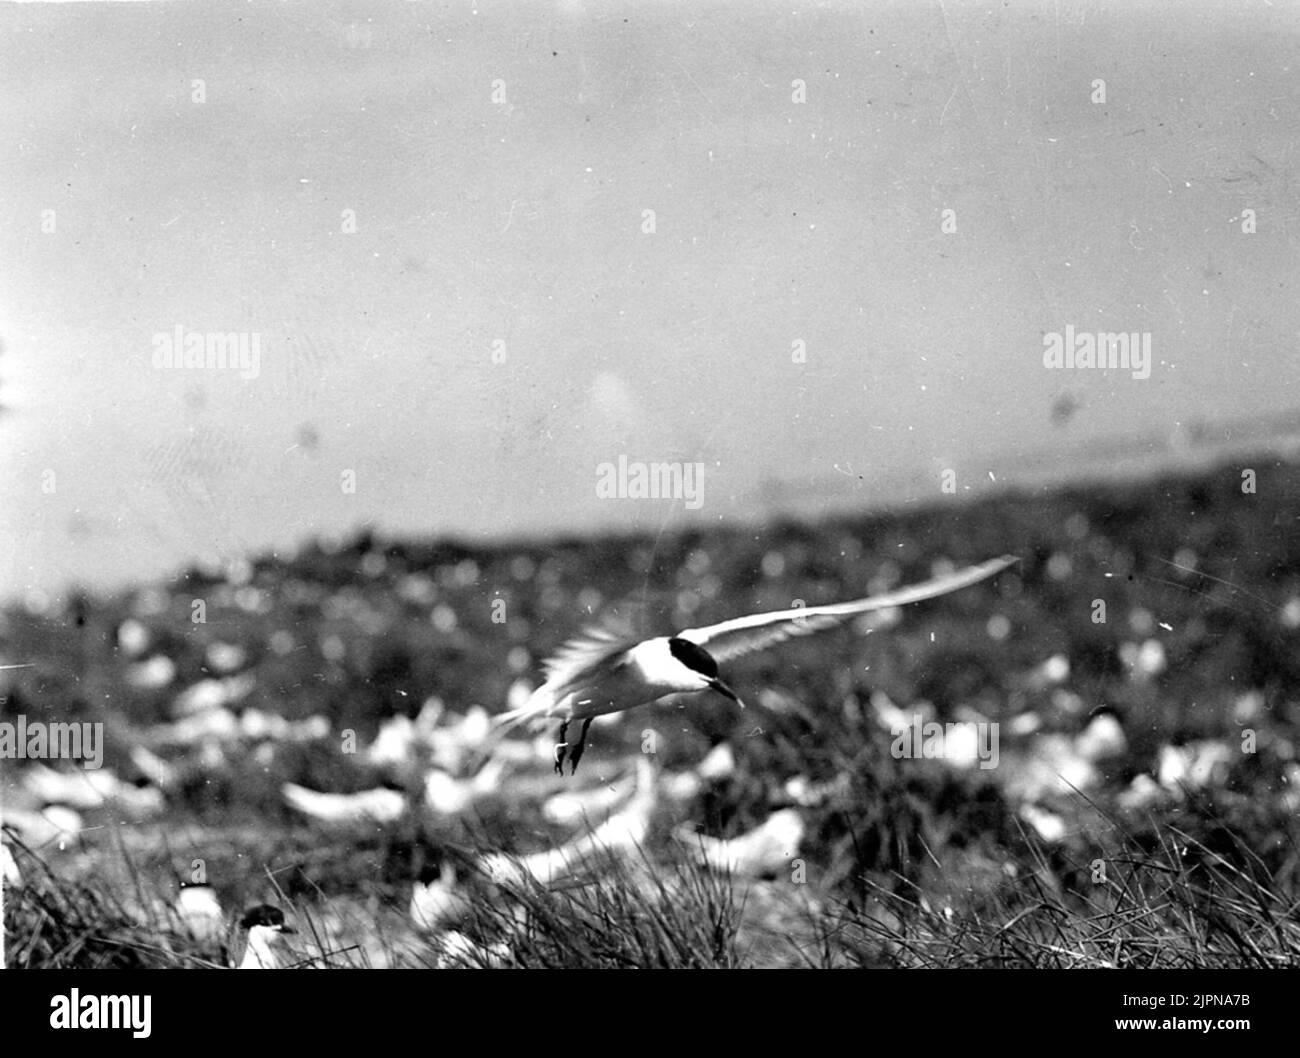 A Kentian tern (Sterna Cantiaca) strikes in society. En Kentsk tärna (Sterna cantiaca) slår ned i samhället. Stock Photo